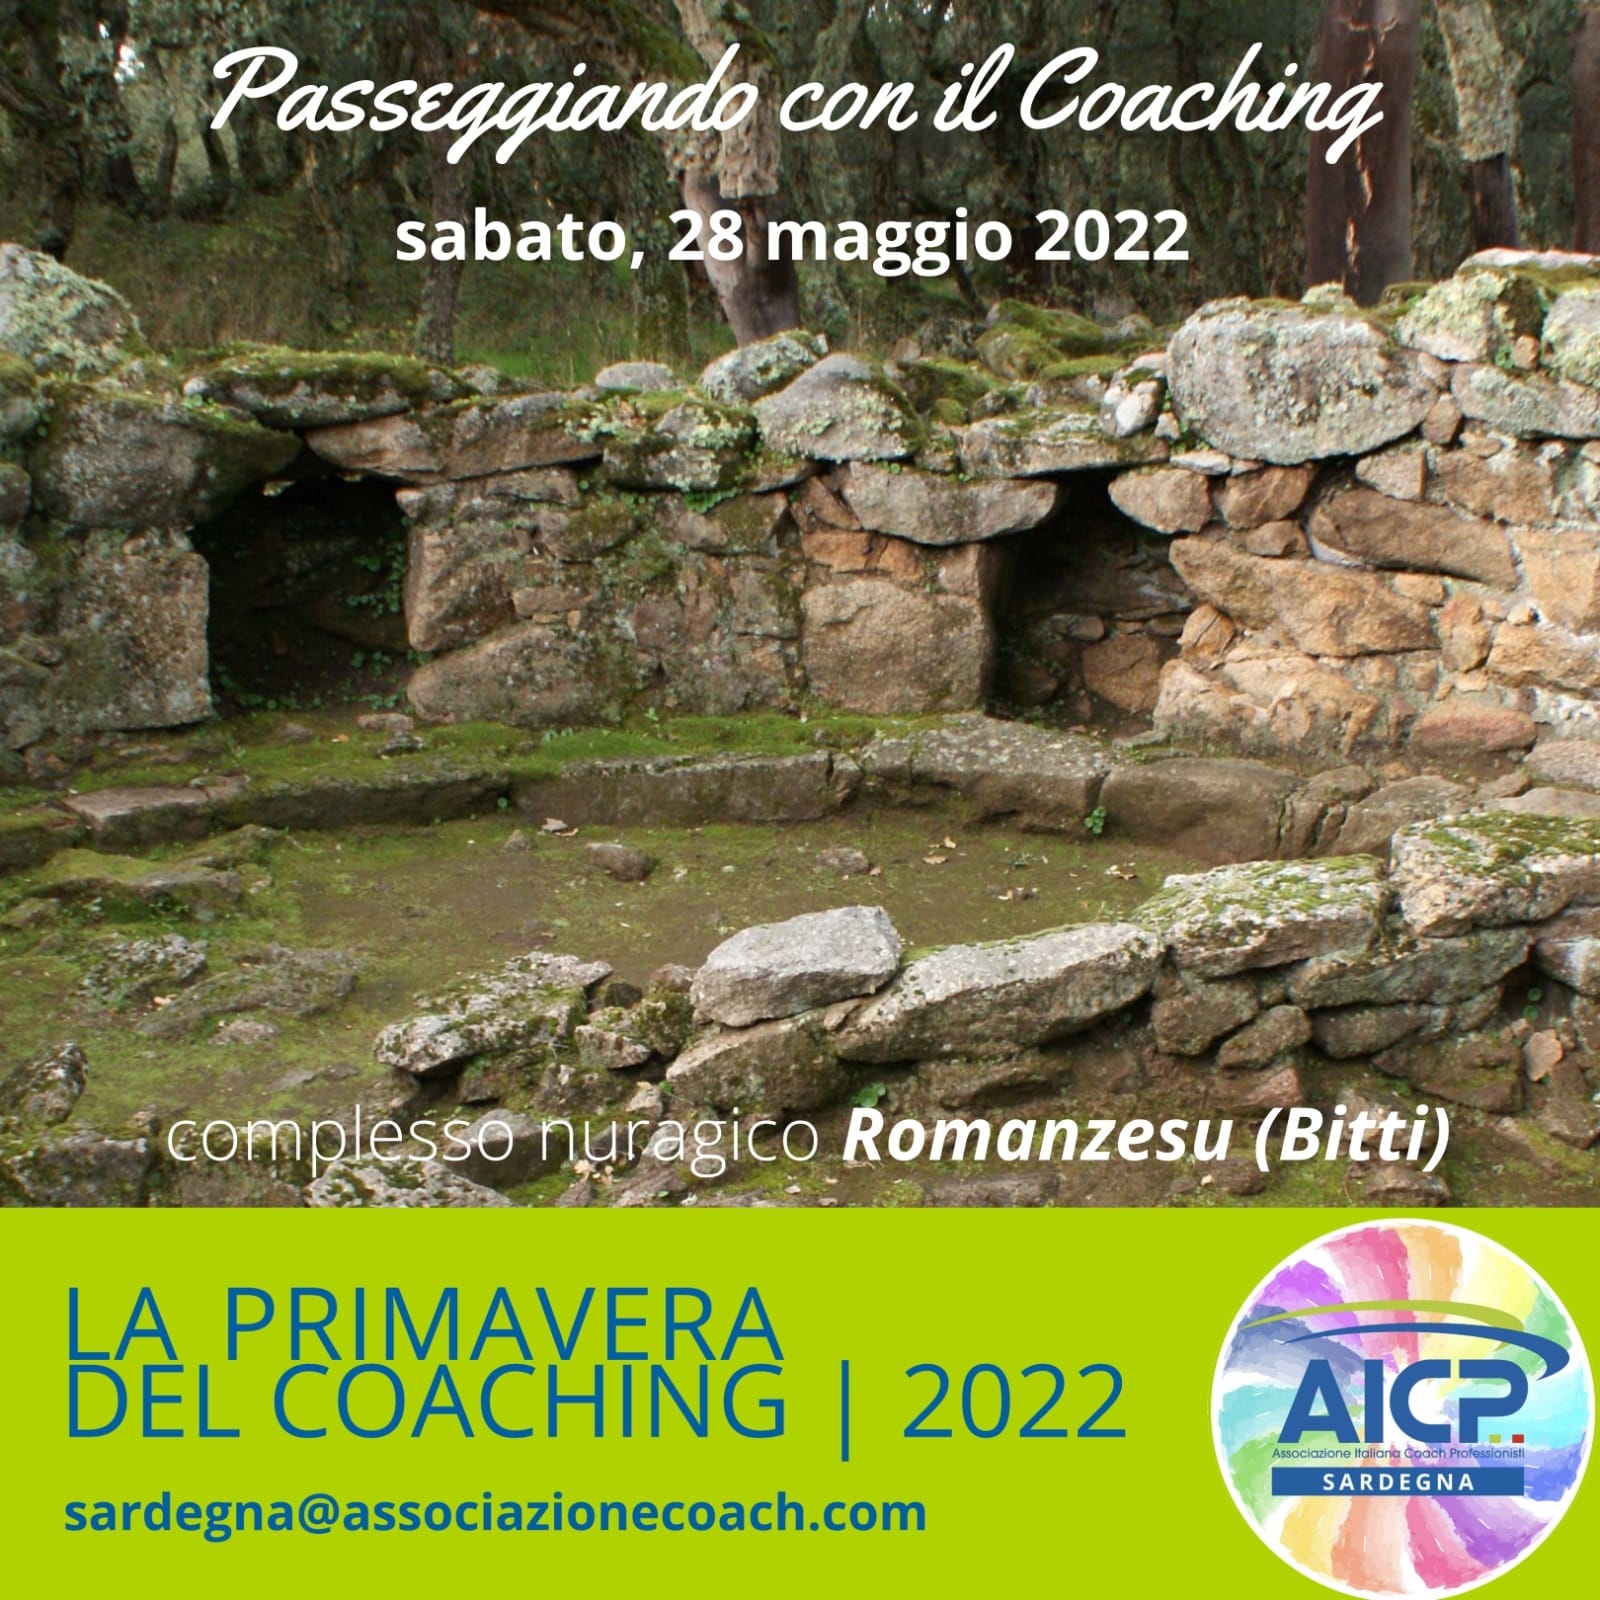 Bitti - L'Associazione Italiana Coach Professionisti propone l'iniziativa "Primavera del Coaching 2022"